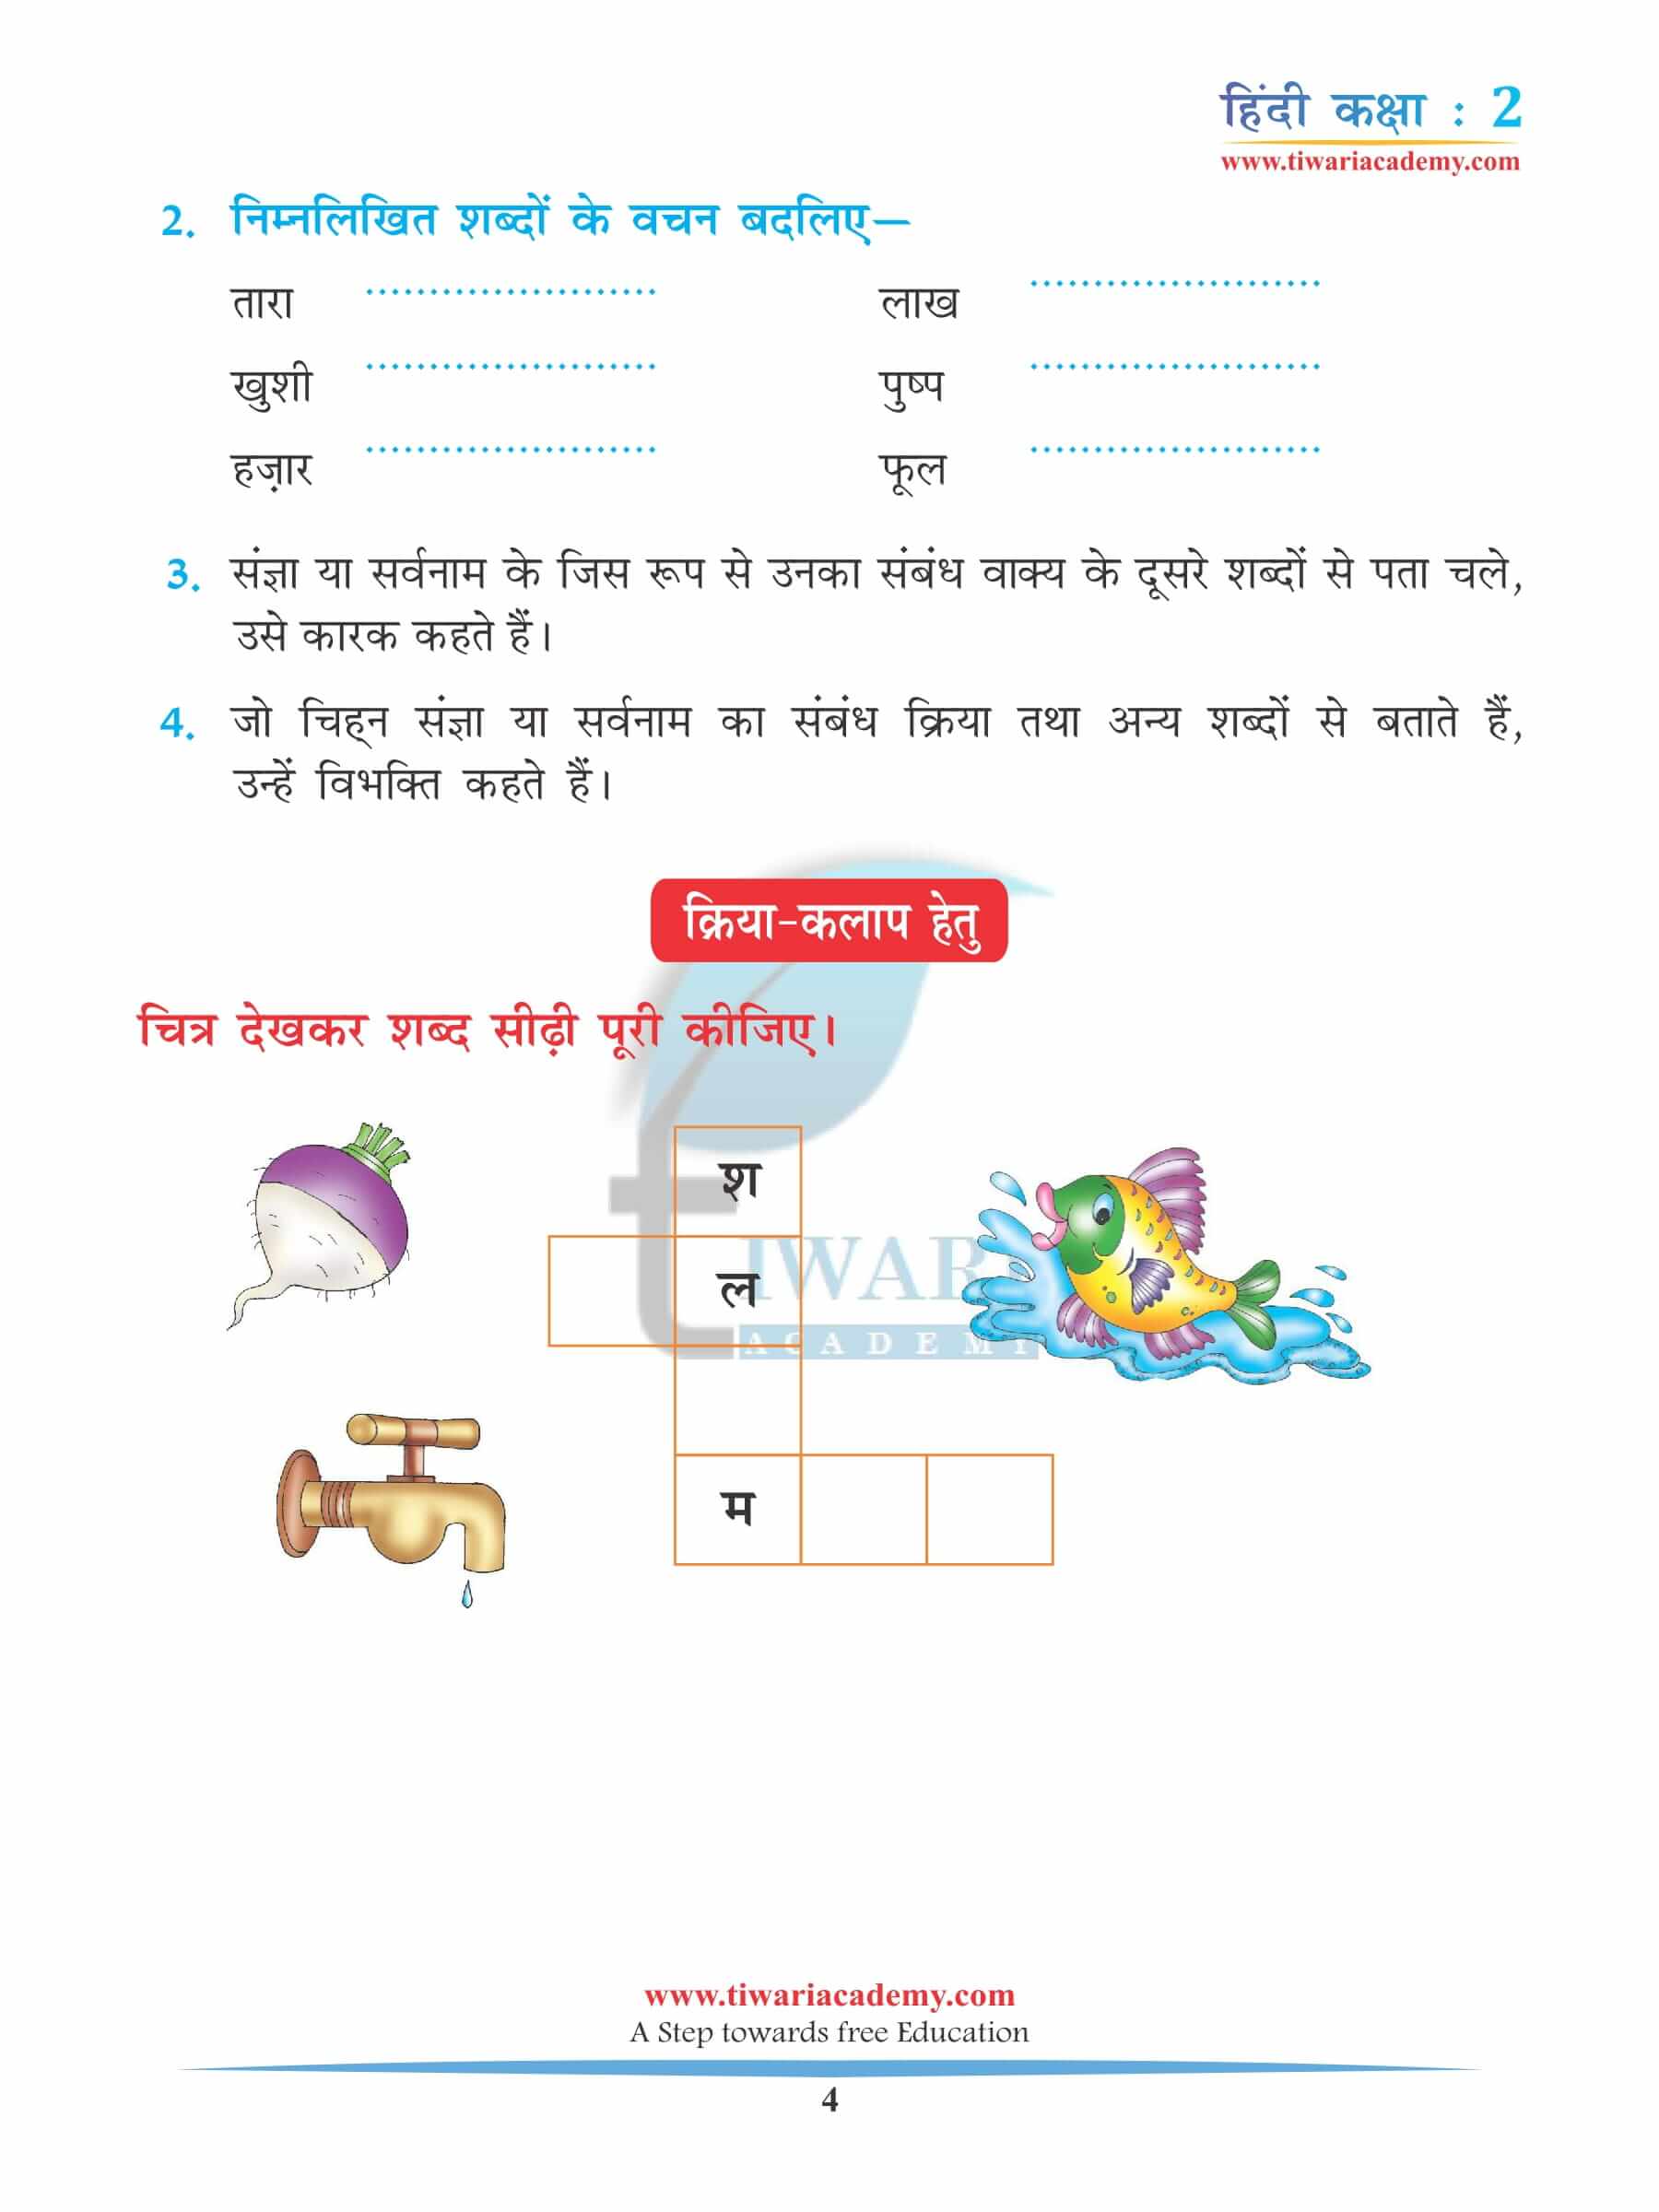 कक्षा 2 हिंदी अध्याय 5 अभ्यास के लिए